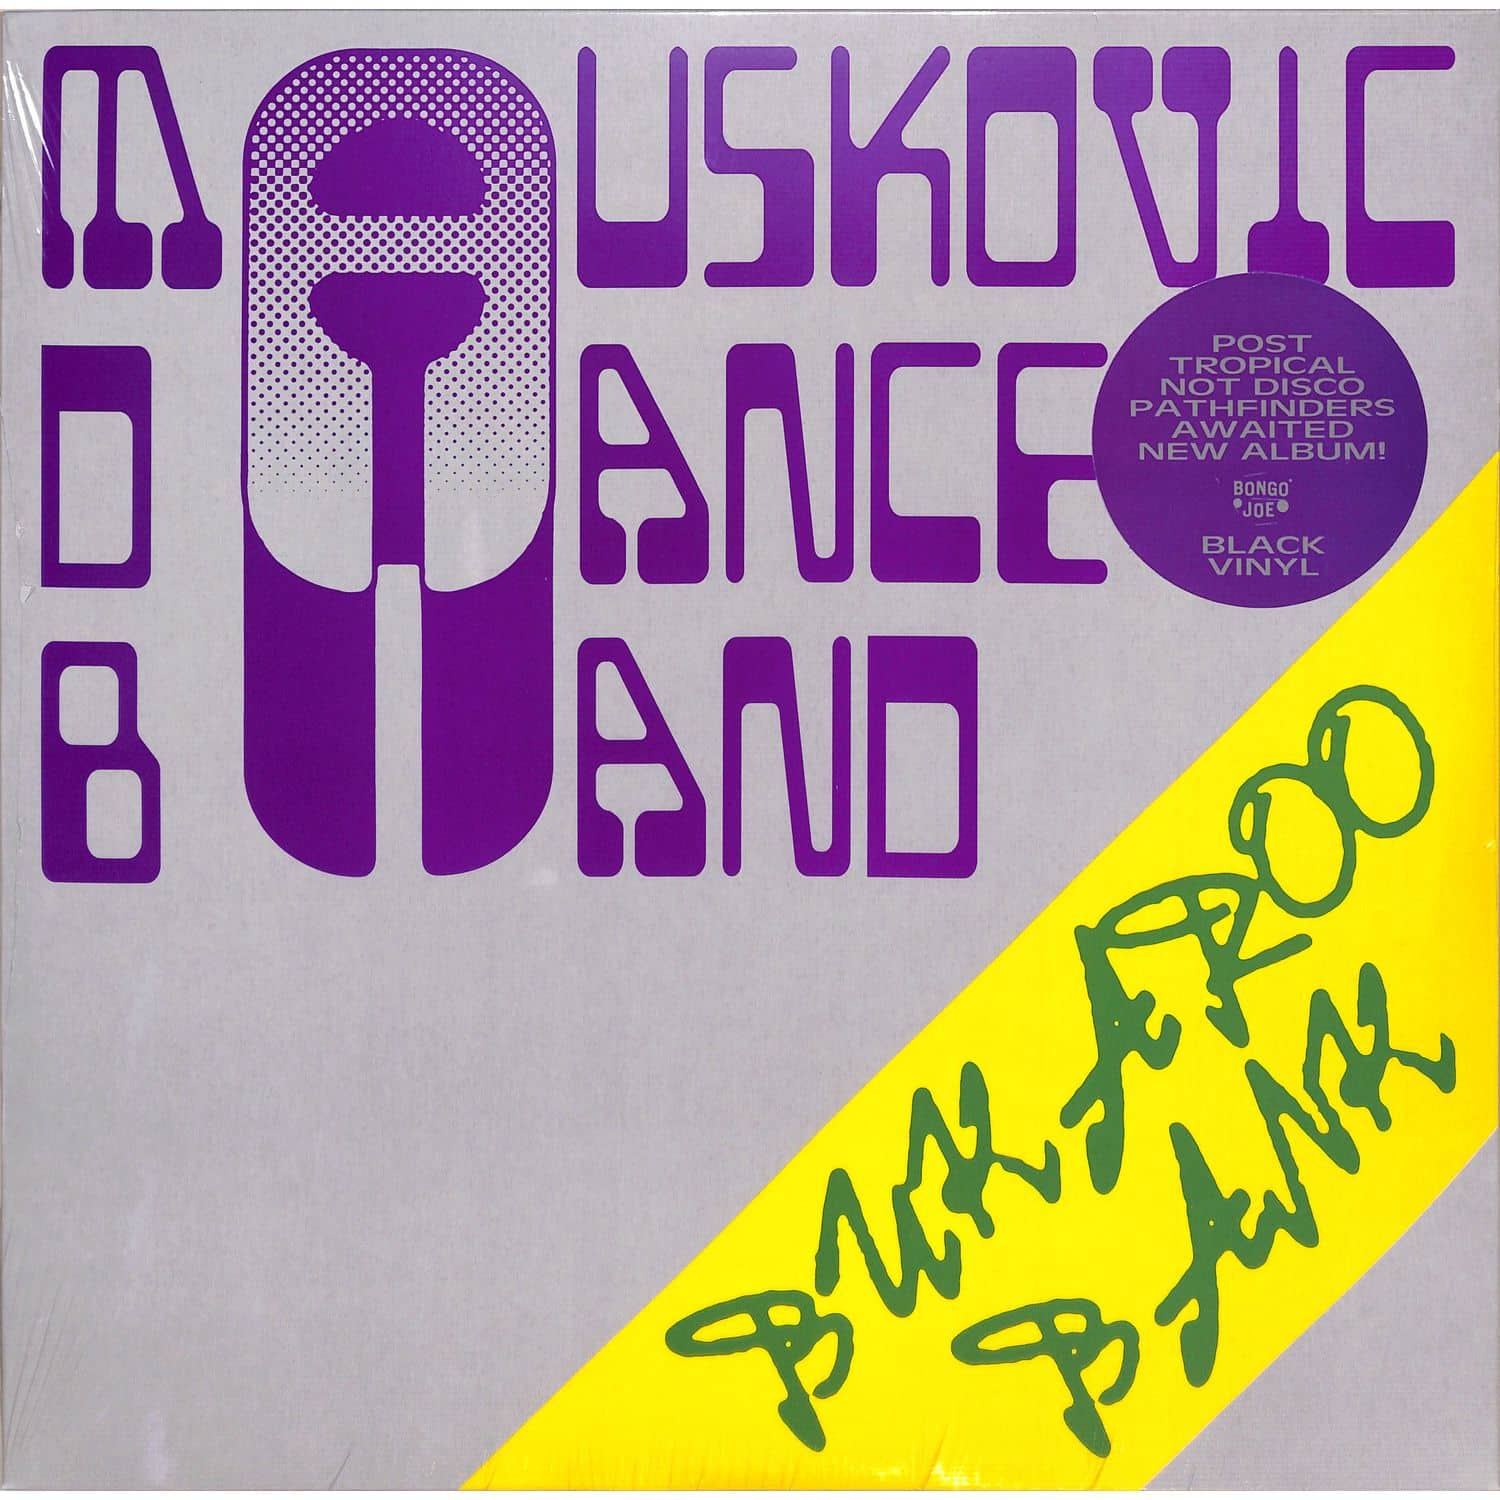 The Mauskovic Dance Band - BUKAROO BANK 